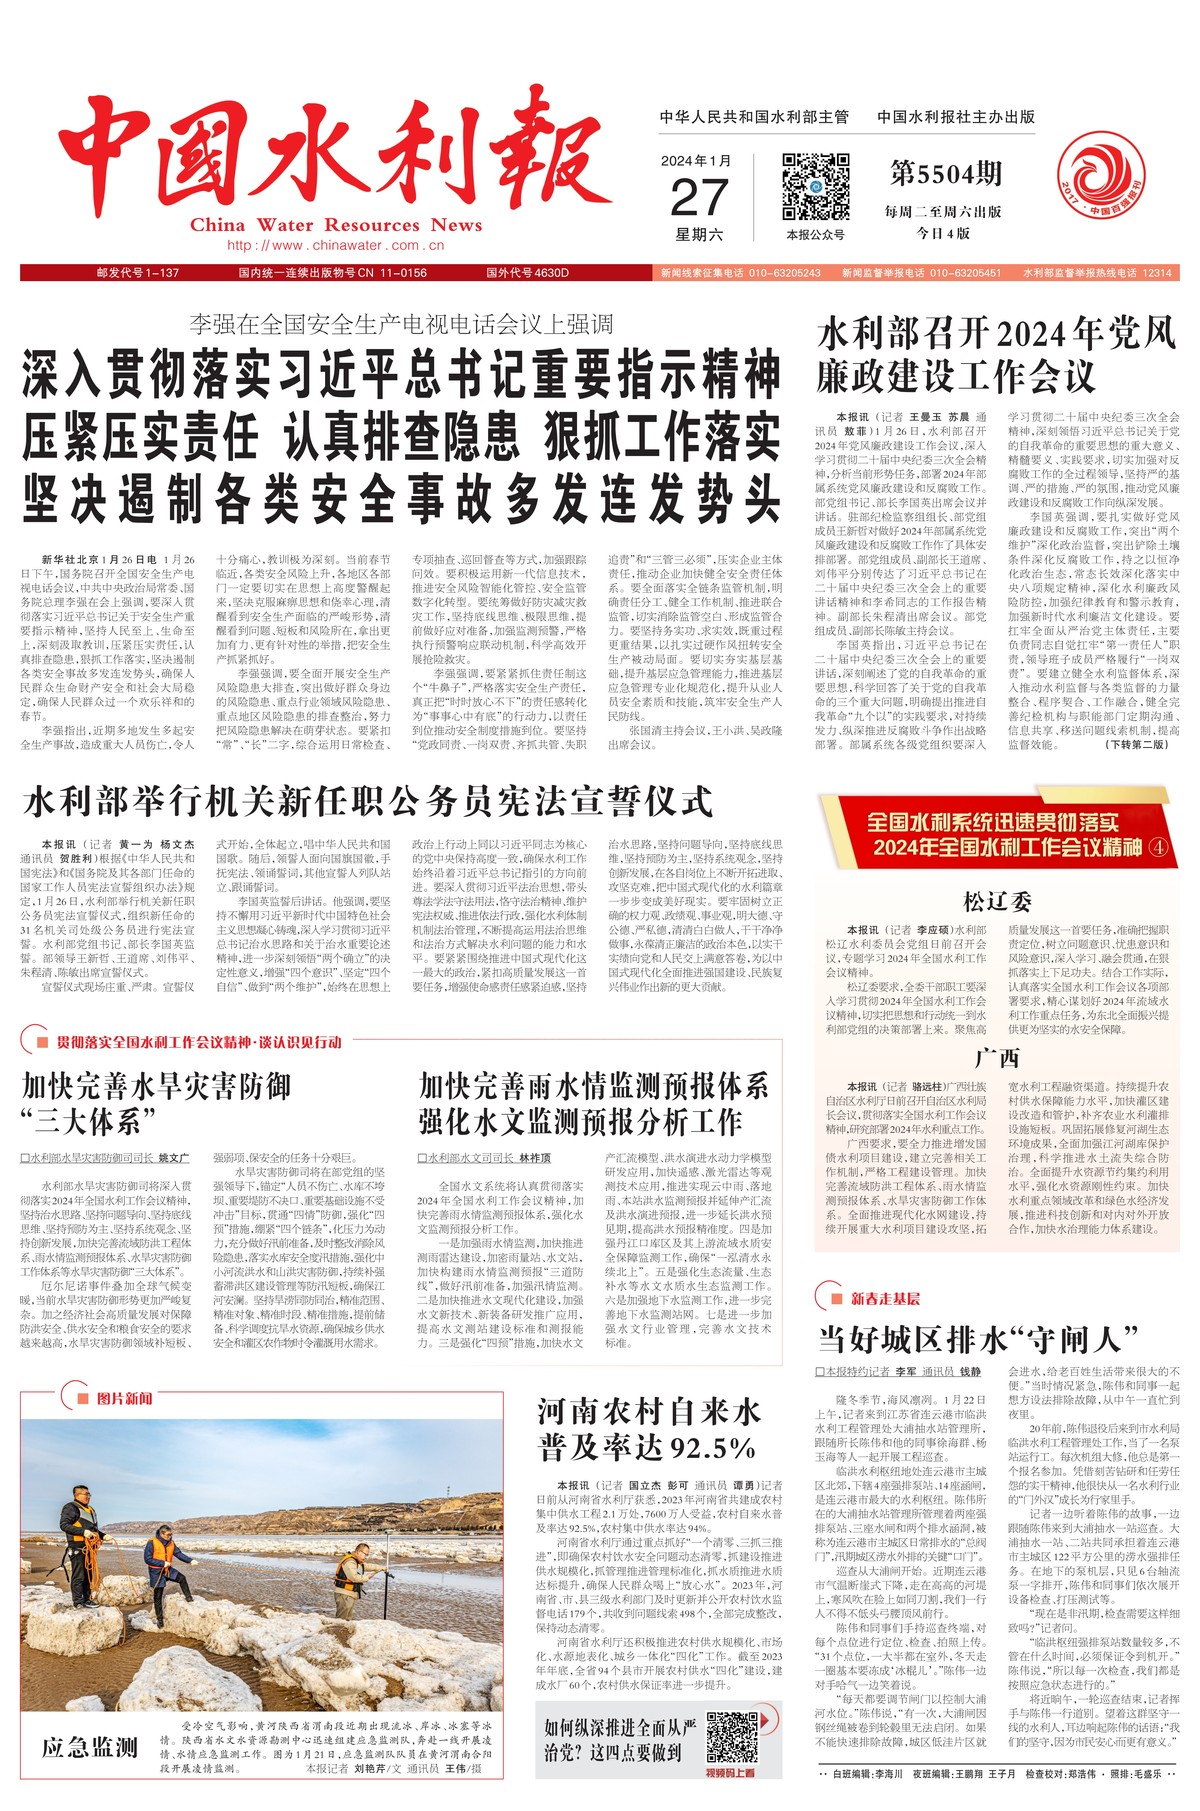 中国水利报：河南农村自来水普及率达92.5%